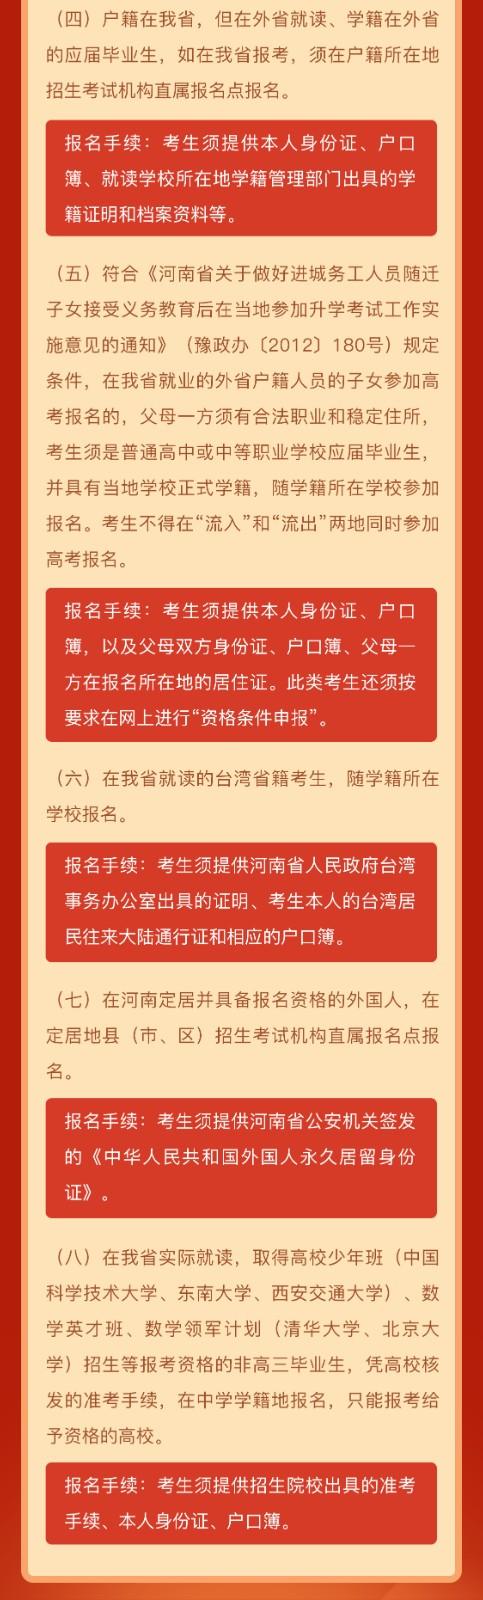 2022年河南省普通高校招生网上报名须知